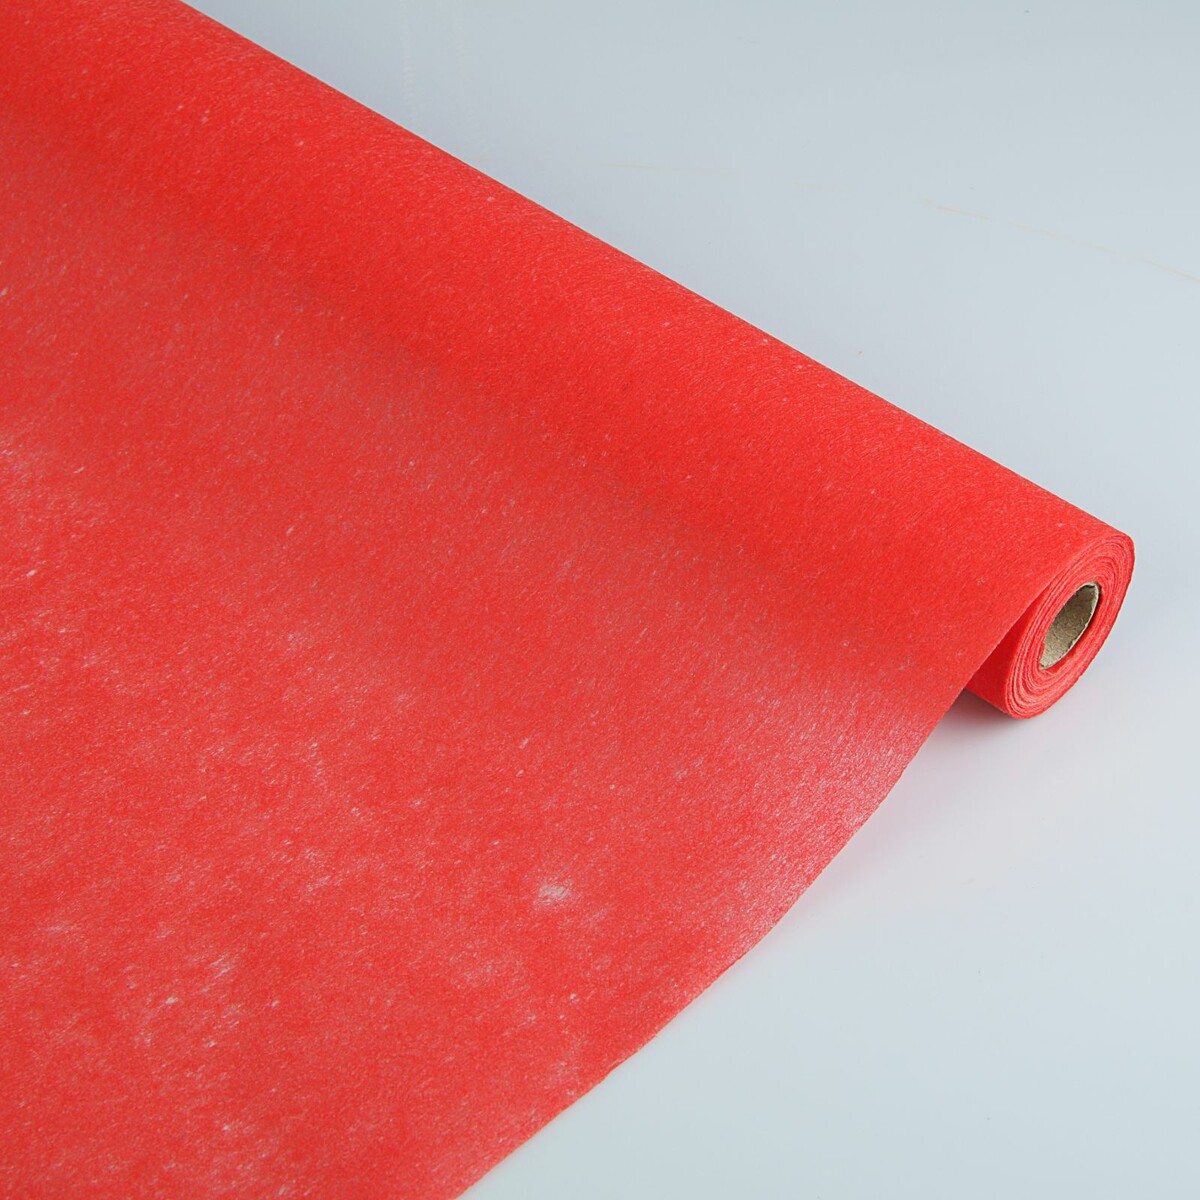 Фетр для упаковок и поделок, однотонный, красный, двусторонний, рулон 1шт., 50 см x 15 м фетр однотонный зеленый 50 см x 15 м